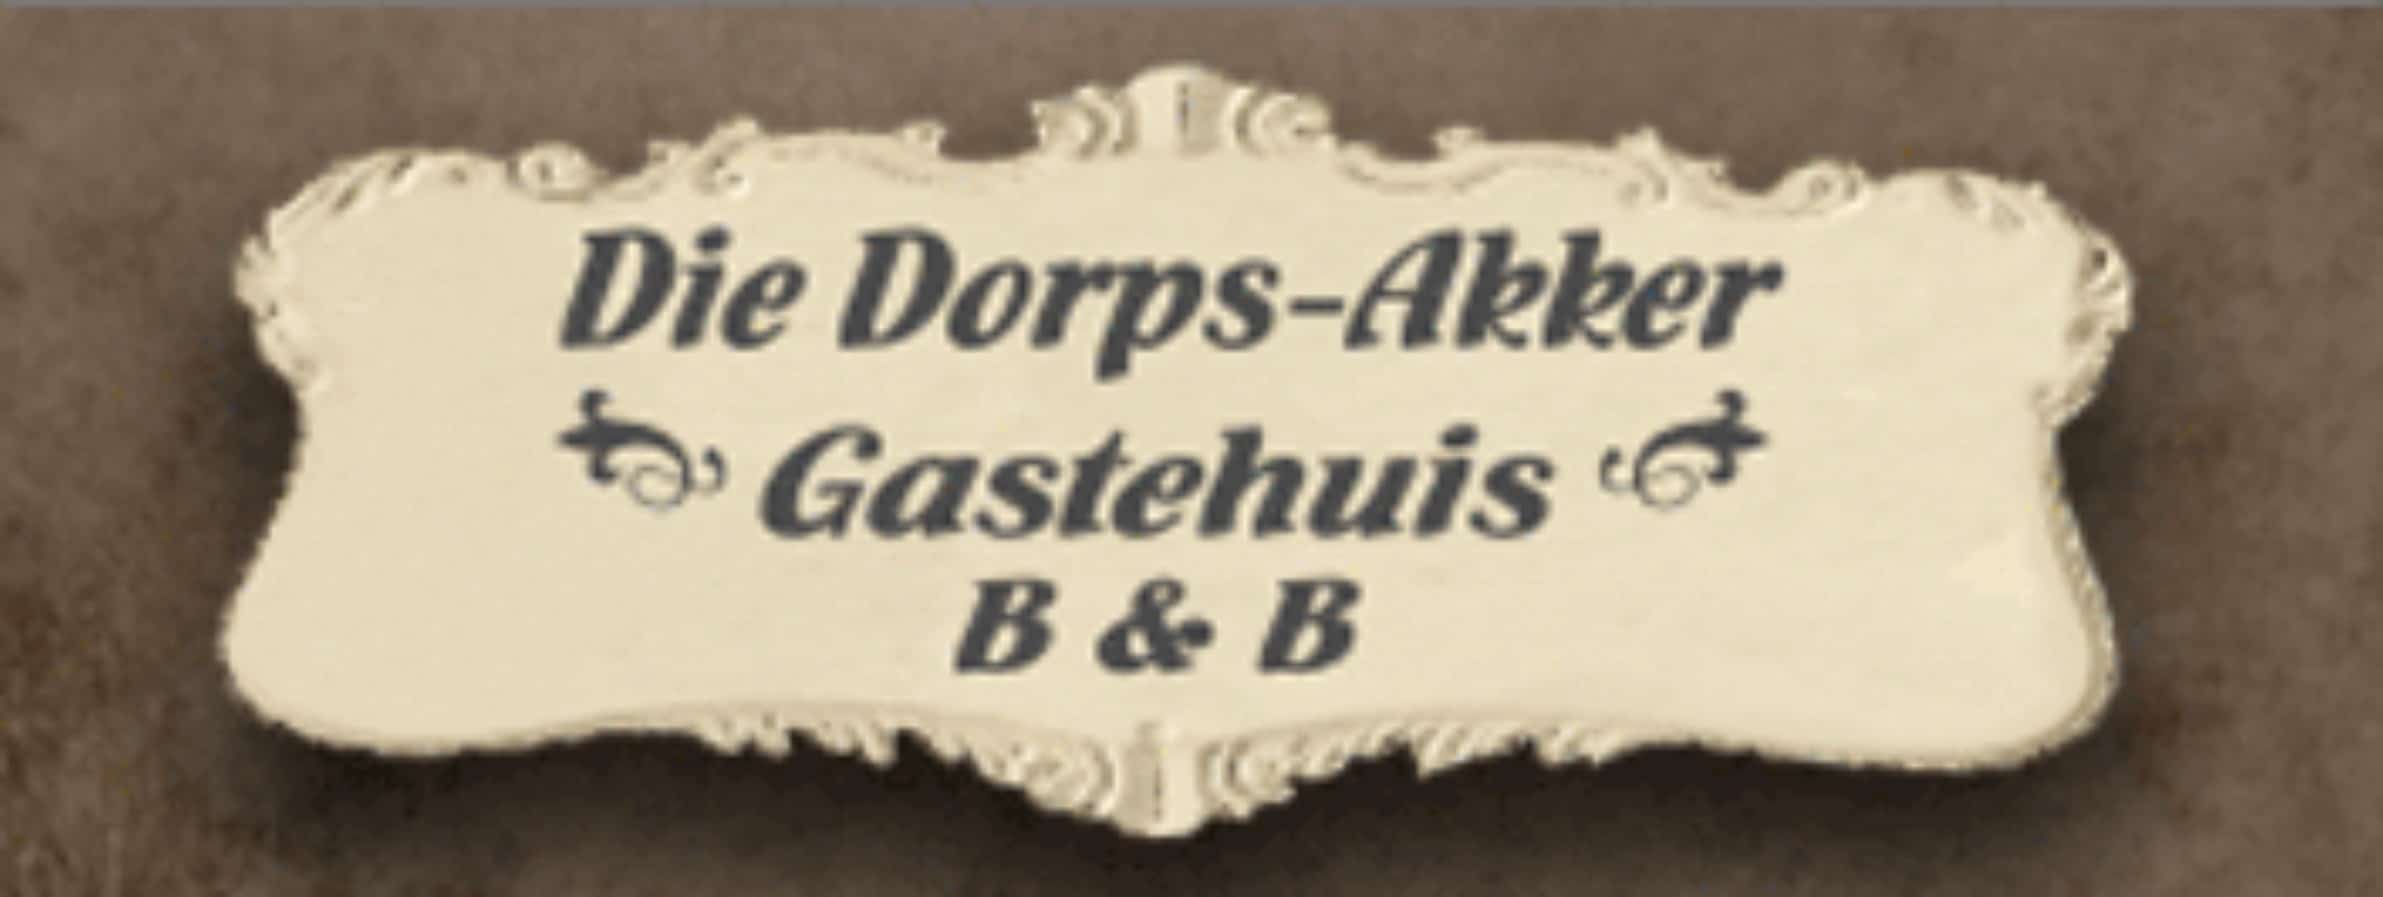 Die Dorps-Akker Guest House Heidelberg 2